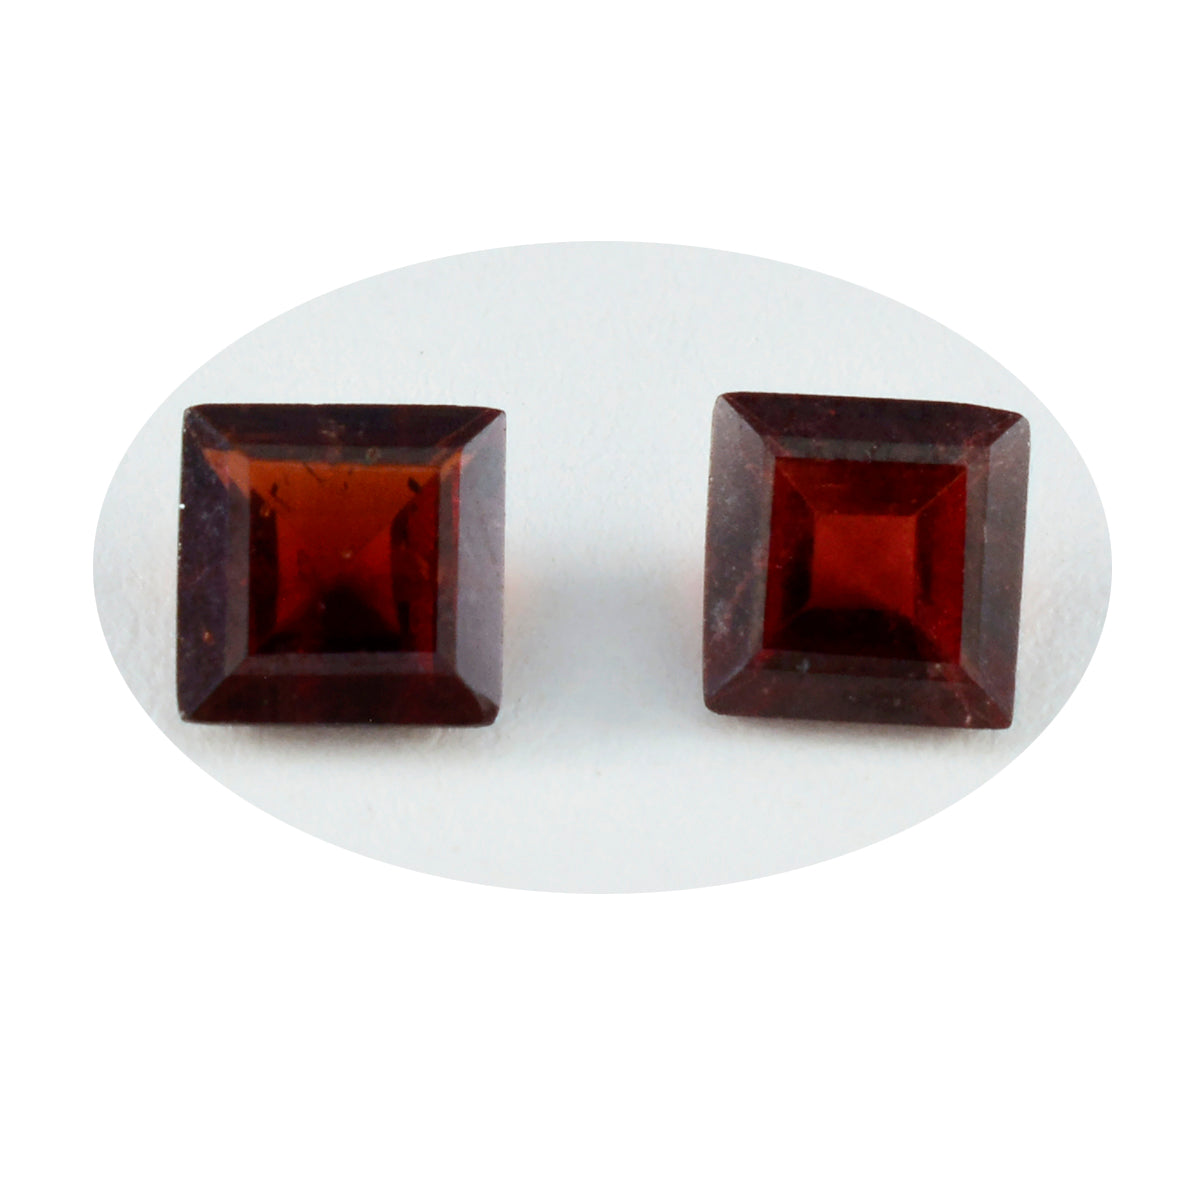 riyogems 1шт натуральный красный гранат ограненный 10x10 мм квадратной формы красивые качественные свободные драгоценные камни